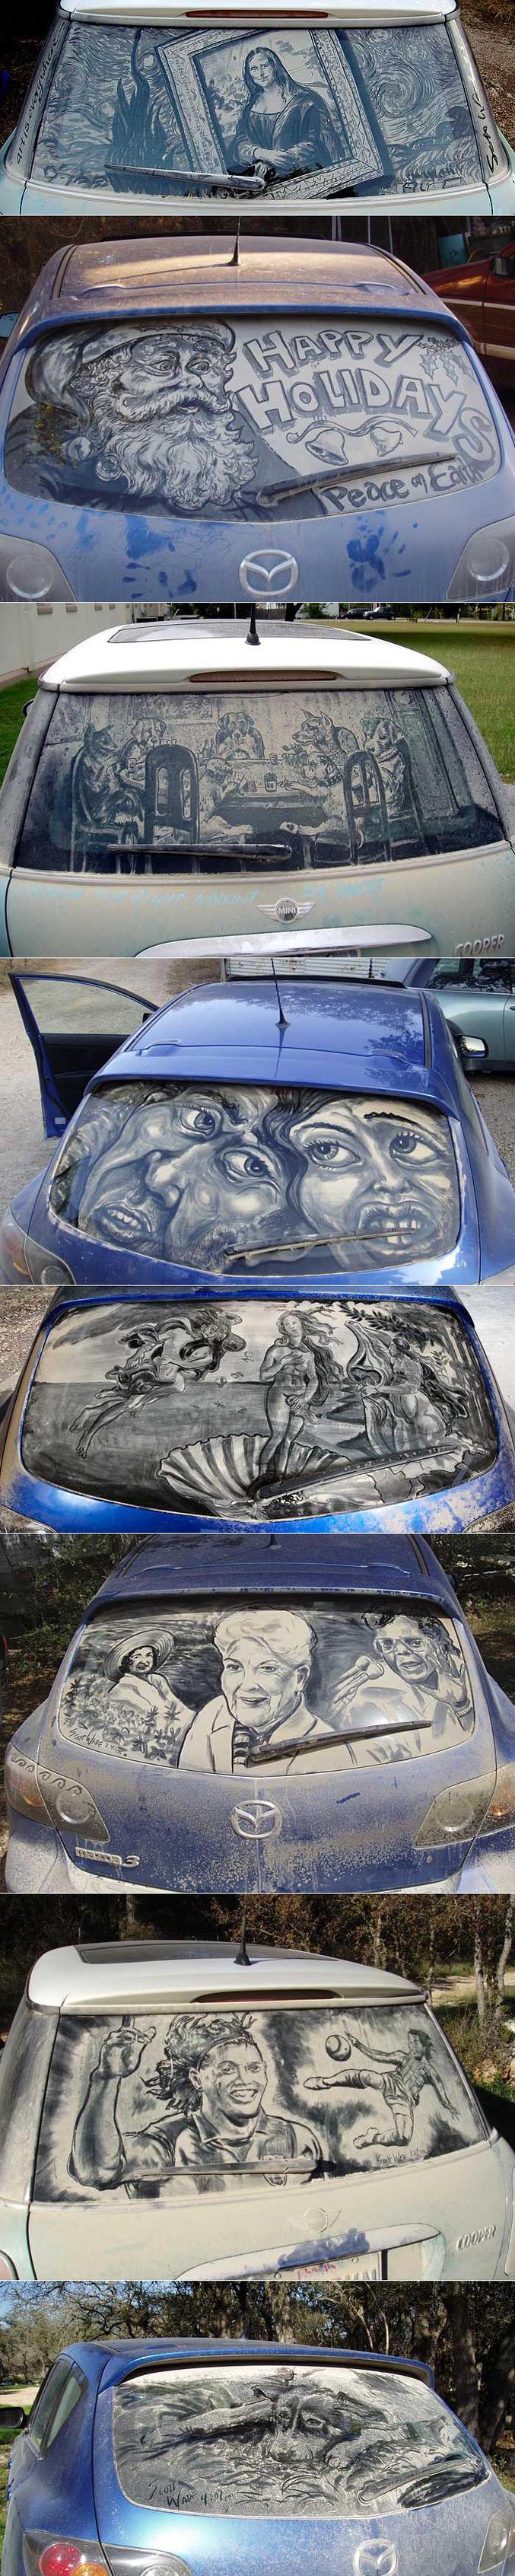 Des dessins réalisés sur des voitures poussiéreuses.